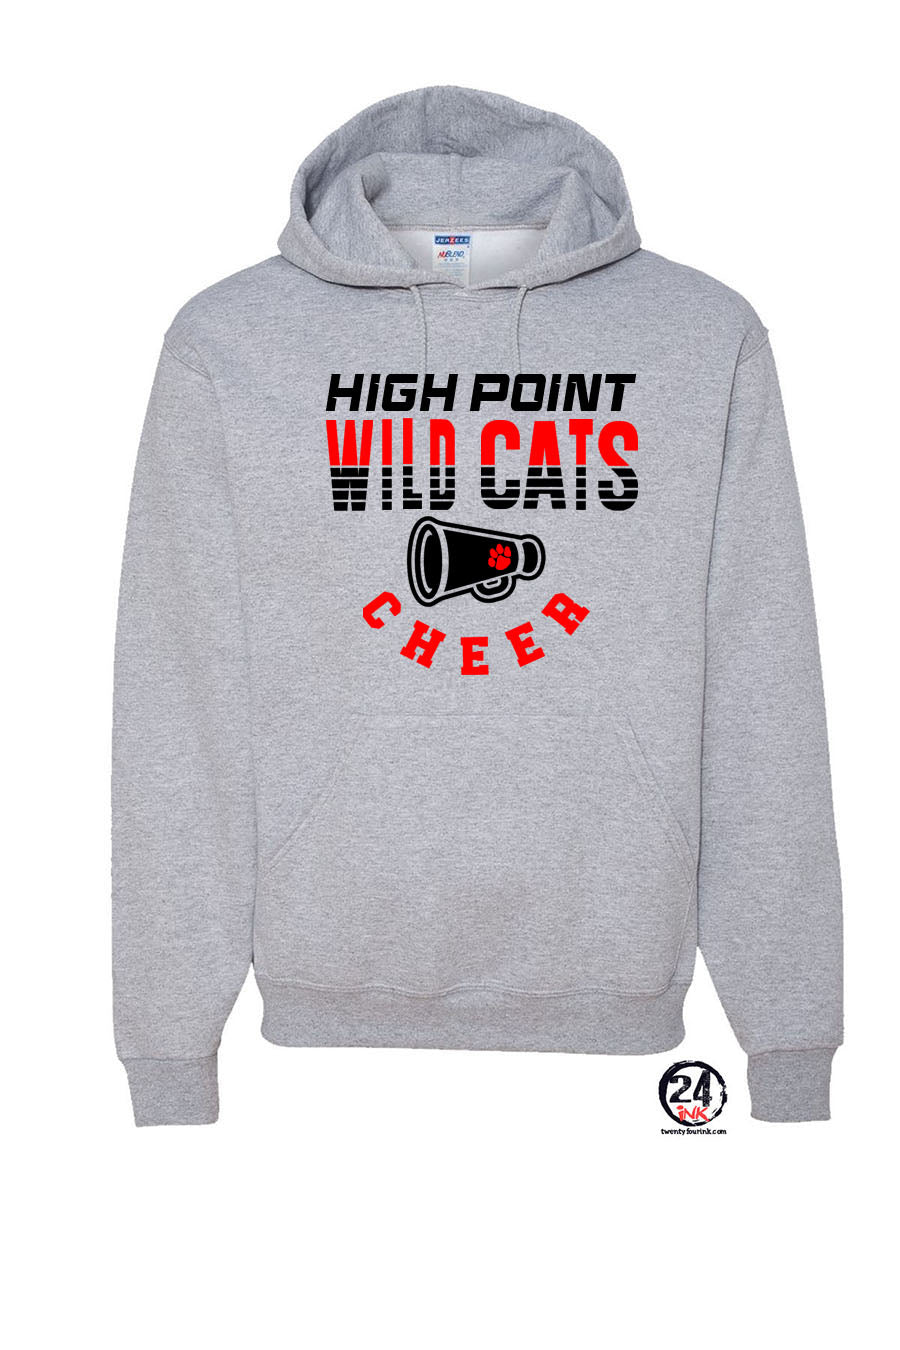 Wildcats cheer Design 2 Hooded Sweatshirt